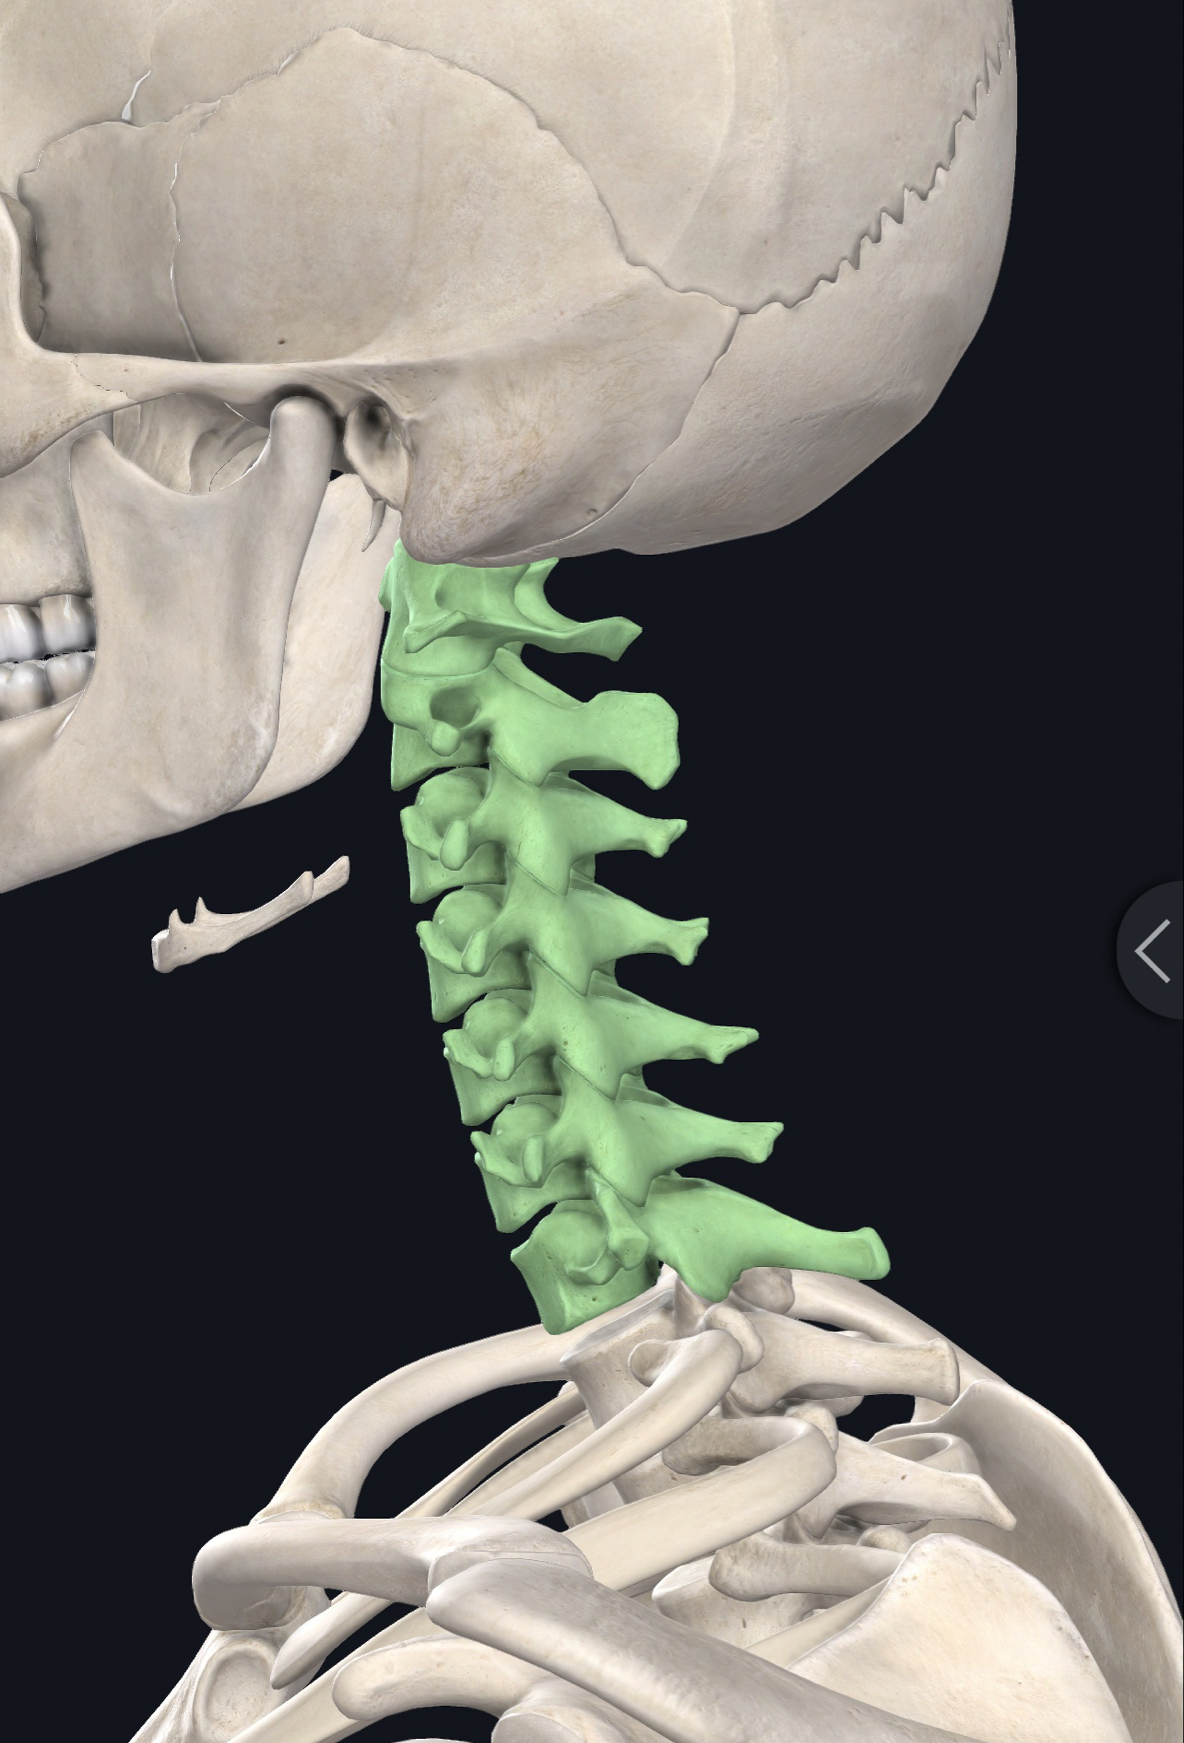 颈椎,指颈椎骨,位于头以下,胸椎以上的部位位于脊柱颈段,共7块